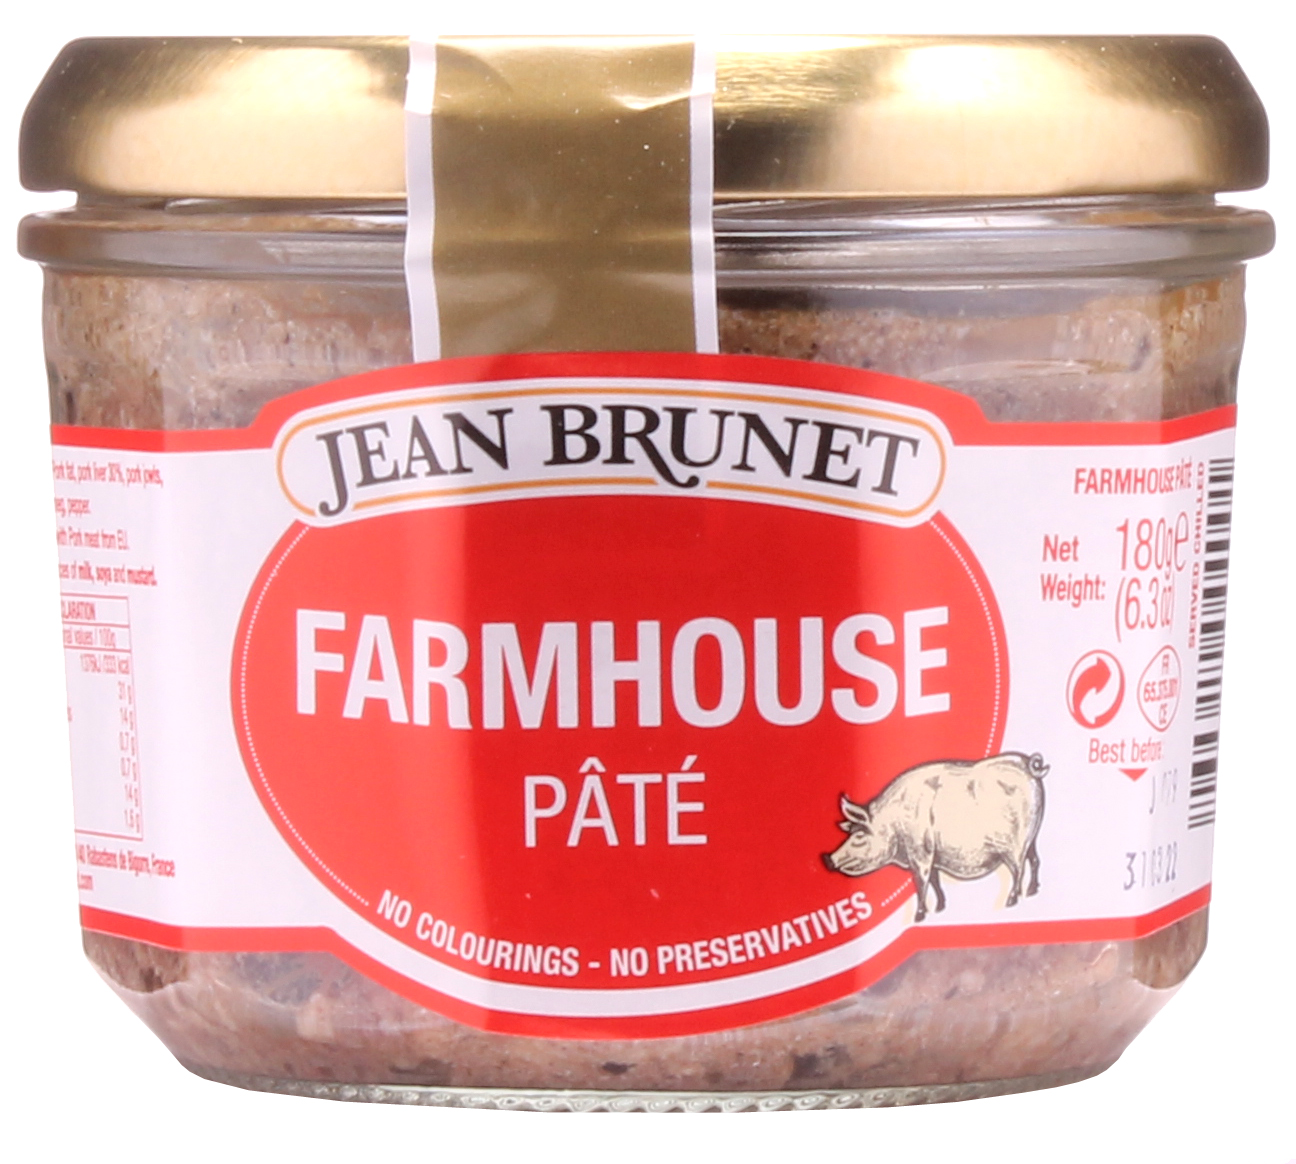 Jean Brunet Farmhouse Pate